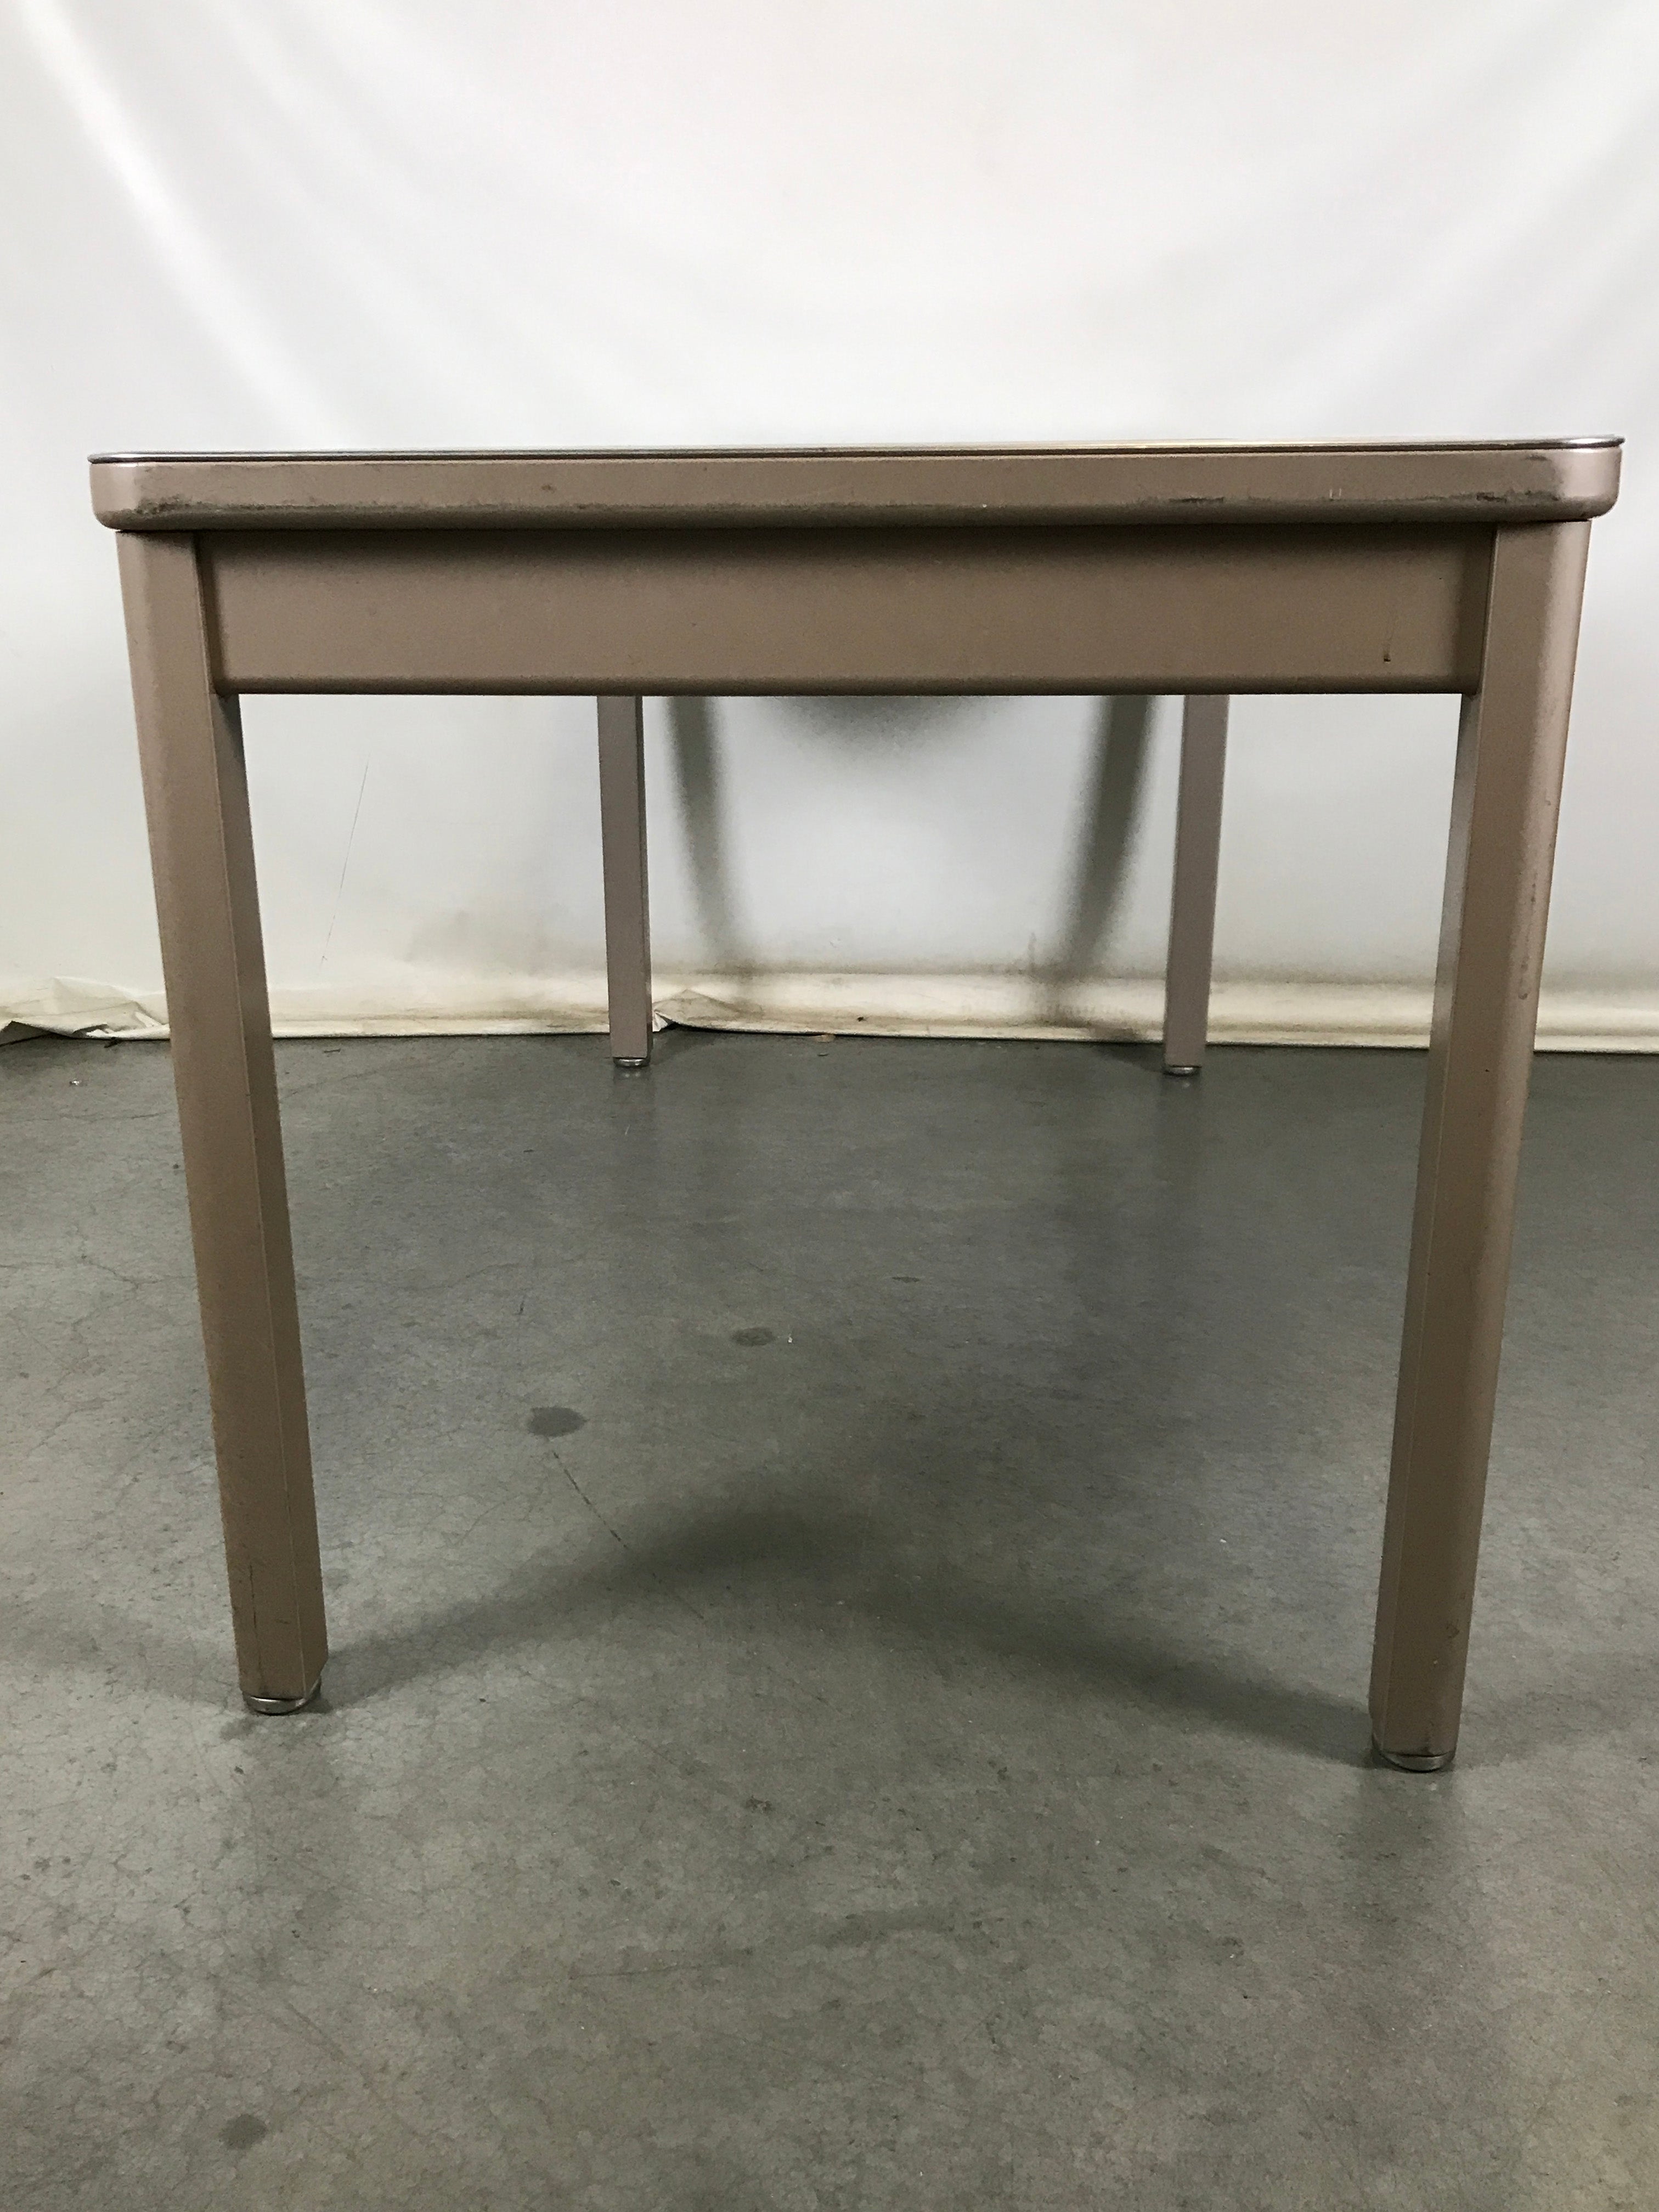 Metal Desk With Wooden Top